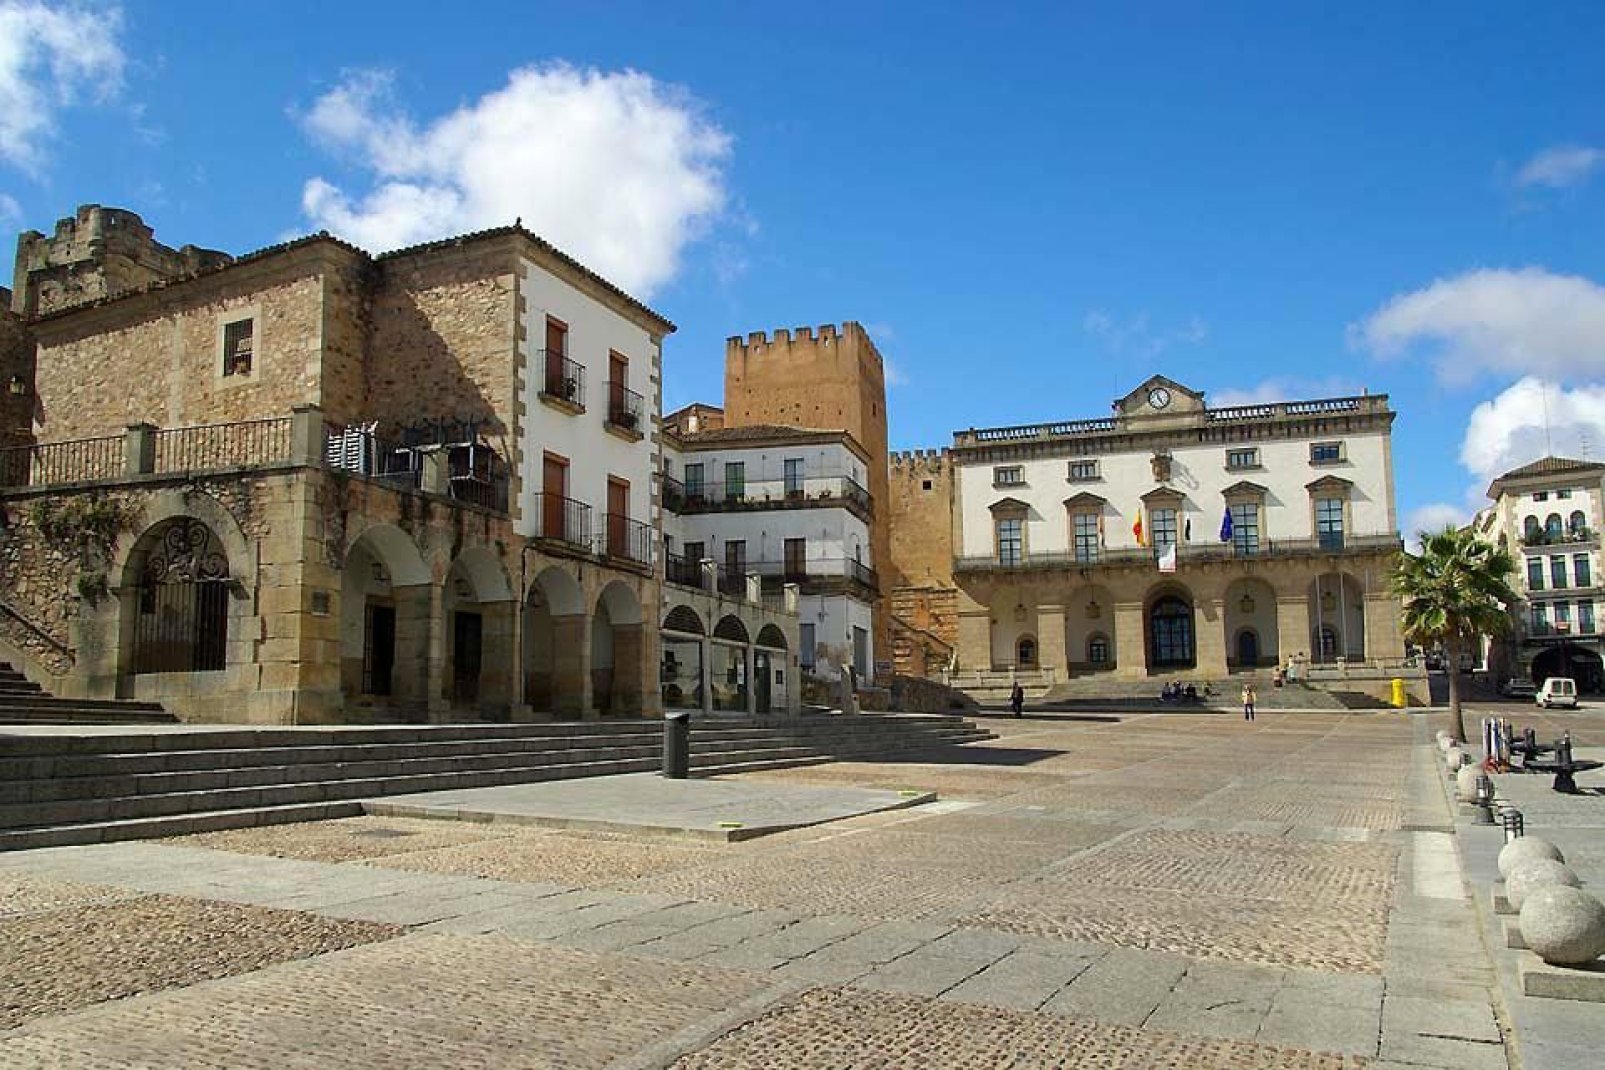 Die Stadt Caceres wurde 1986 aufgrund ihrer zahlreichen historischen Monumente zur UNESCO-Weltkultursttte erklrt.